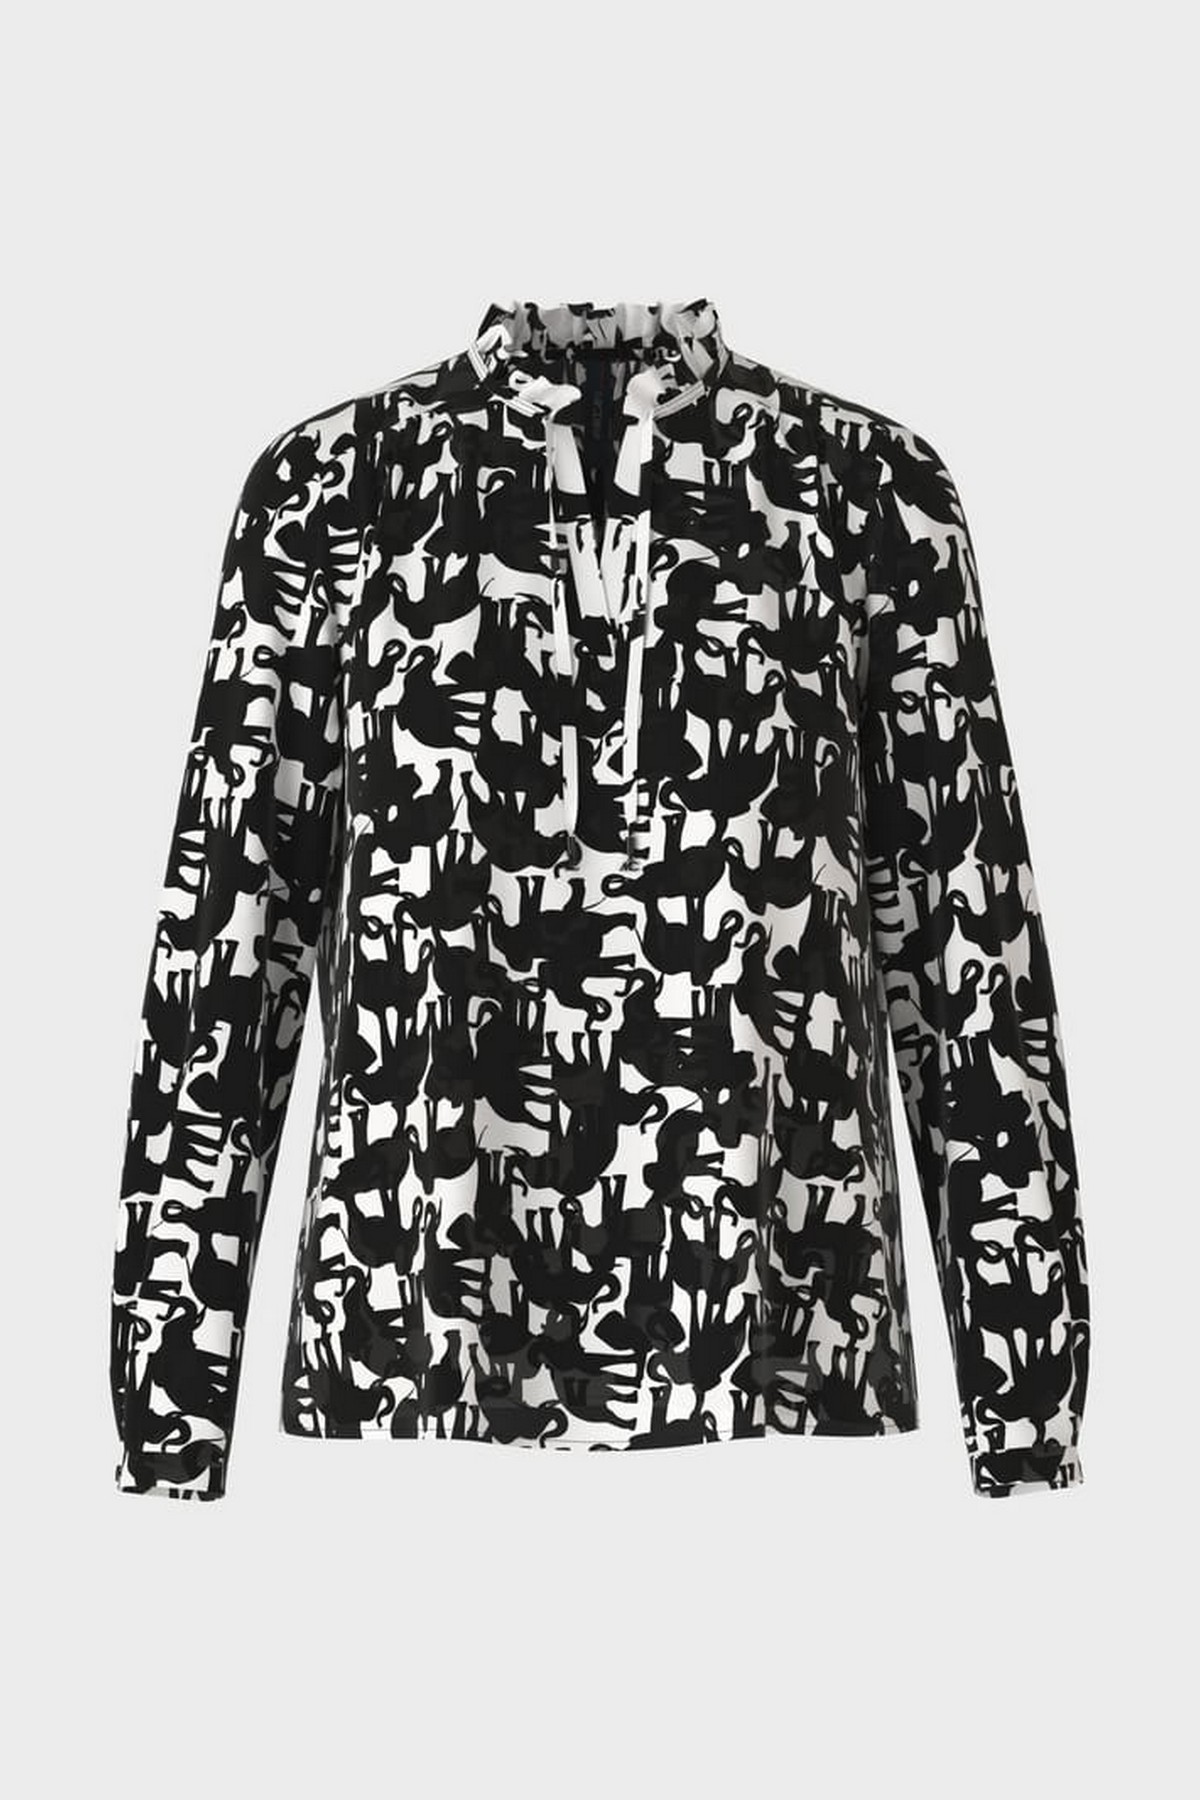 Shirtbloes elephant print in de kleur zwart wit van het merk Marc Cain Collections